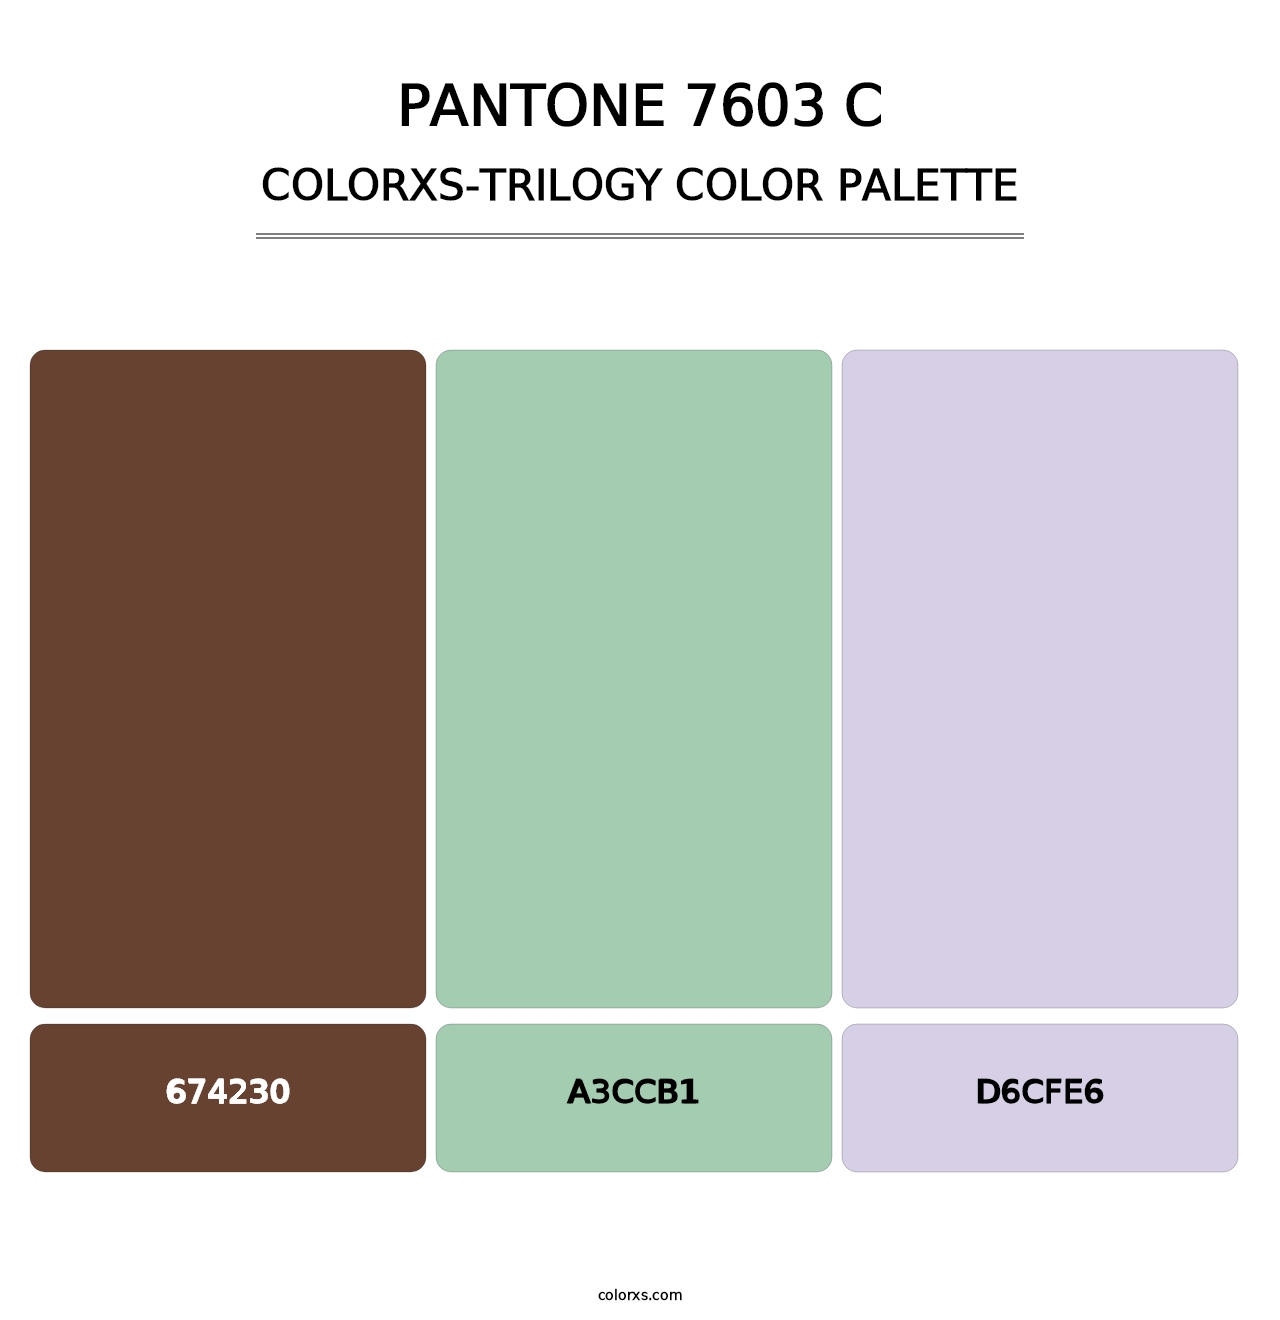 PANTONE 7603 C - Colorxs Trilogy Palette